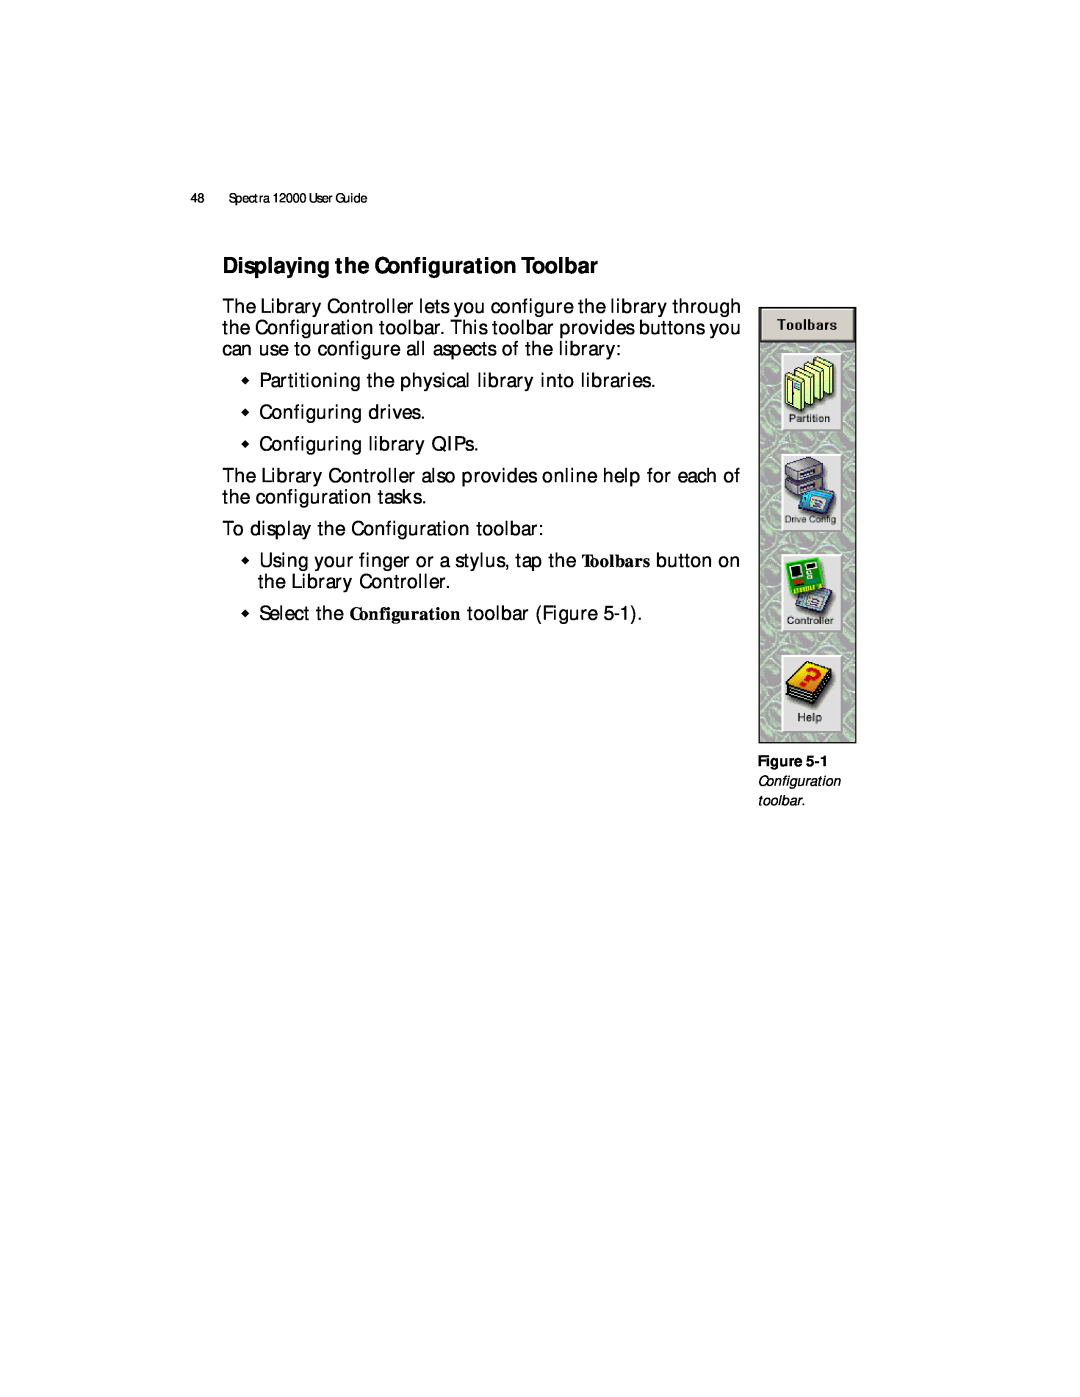 Spectra Logic manual Displaying the Configuration Toolbar, Spectra 12000 User Guide, 1 Configuration toolbar 